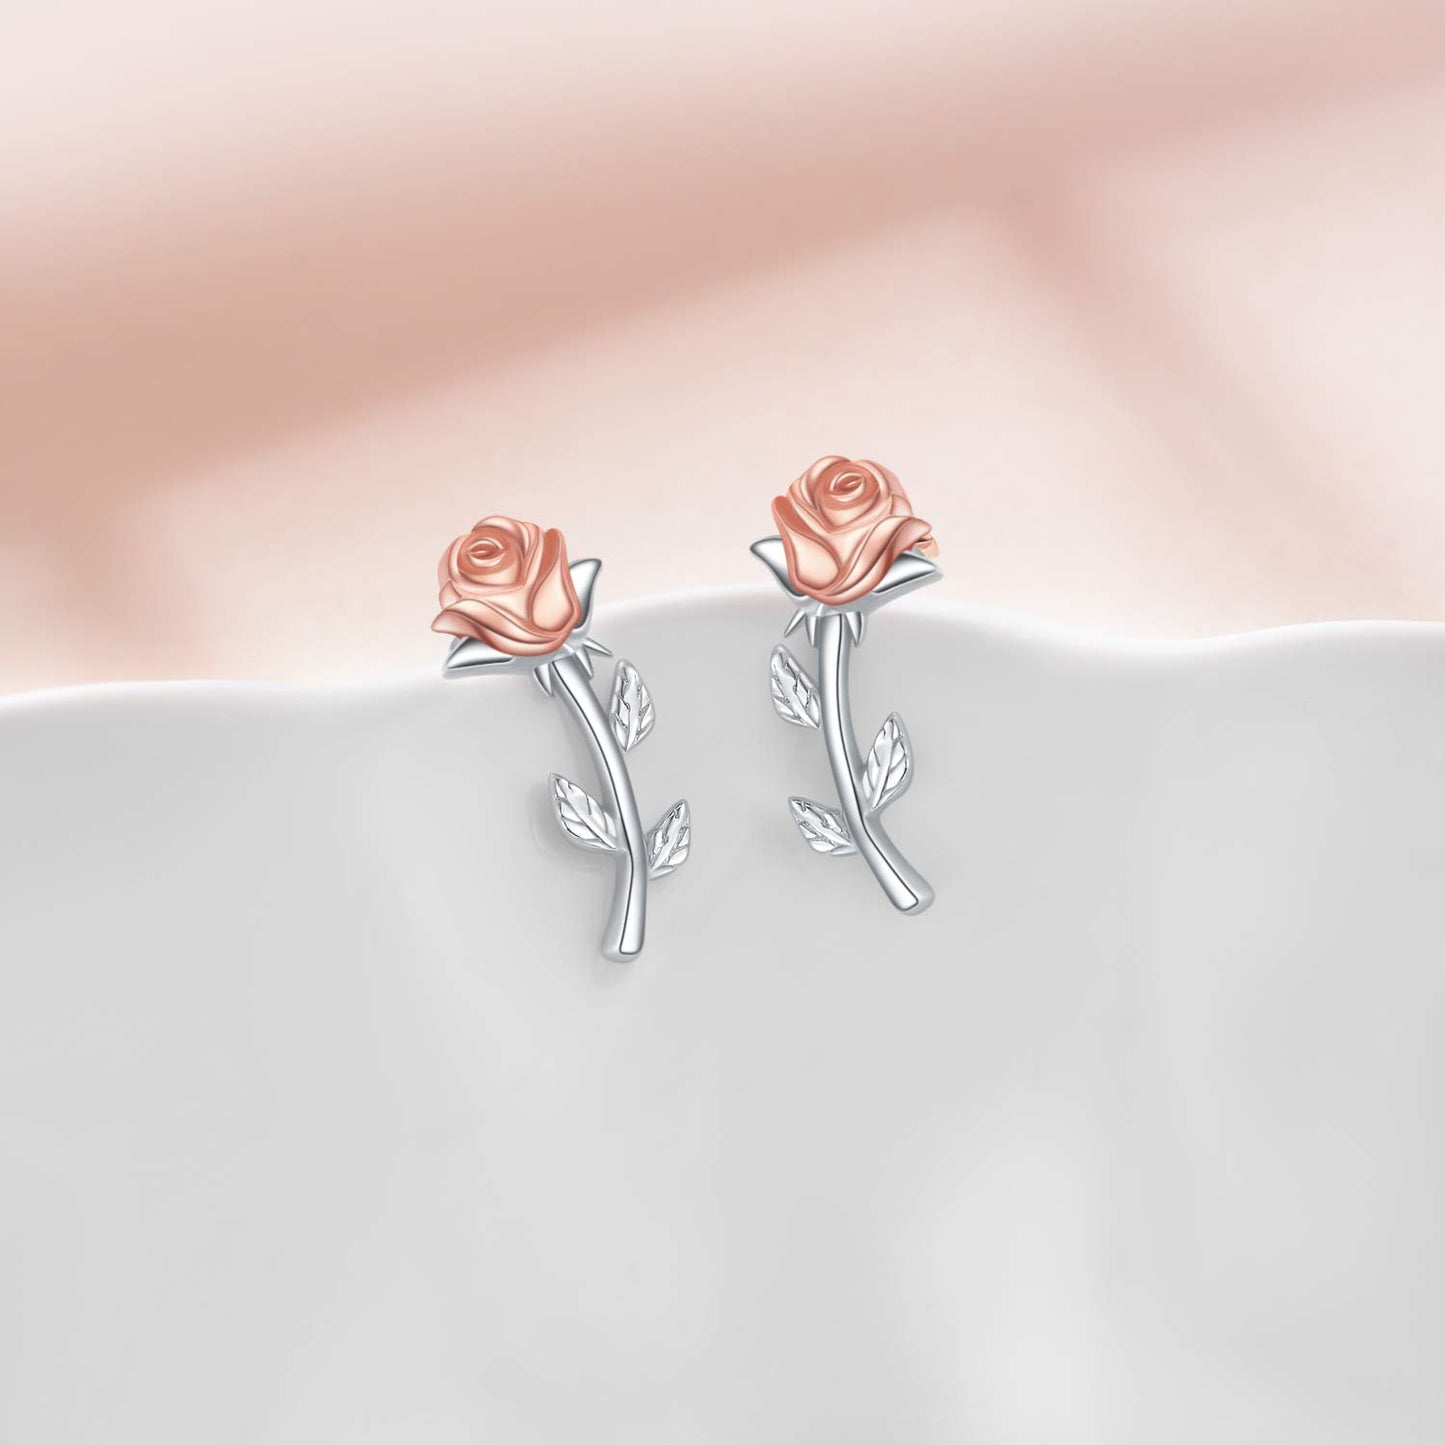 JSJOY Ear Crawler Climber Earrings Sterling Silver Rose Flower Crescent Moon Stud Earrings for Women Girls Jewelry Gifts